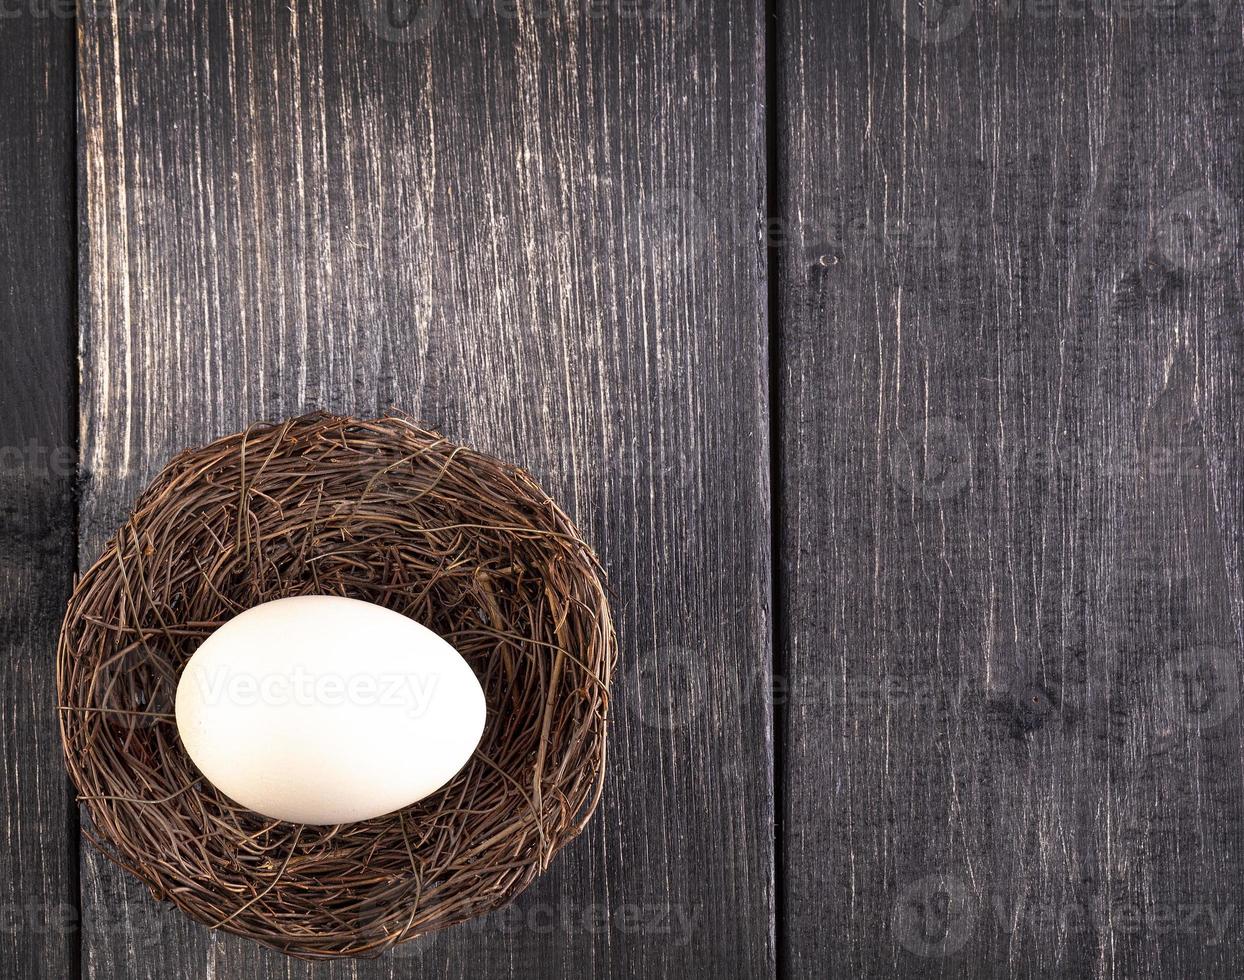 das weiße ei auf dem nest auf dem alten hölzernen hintergrund foto